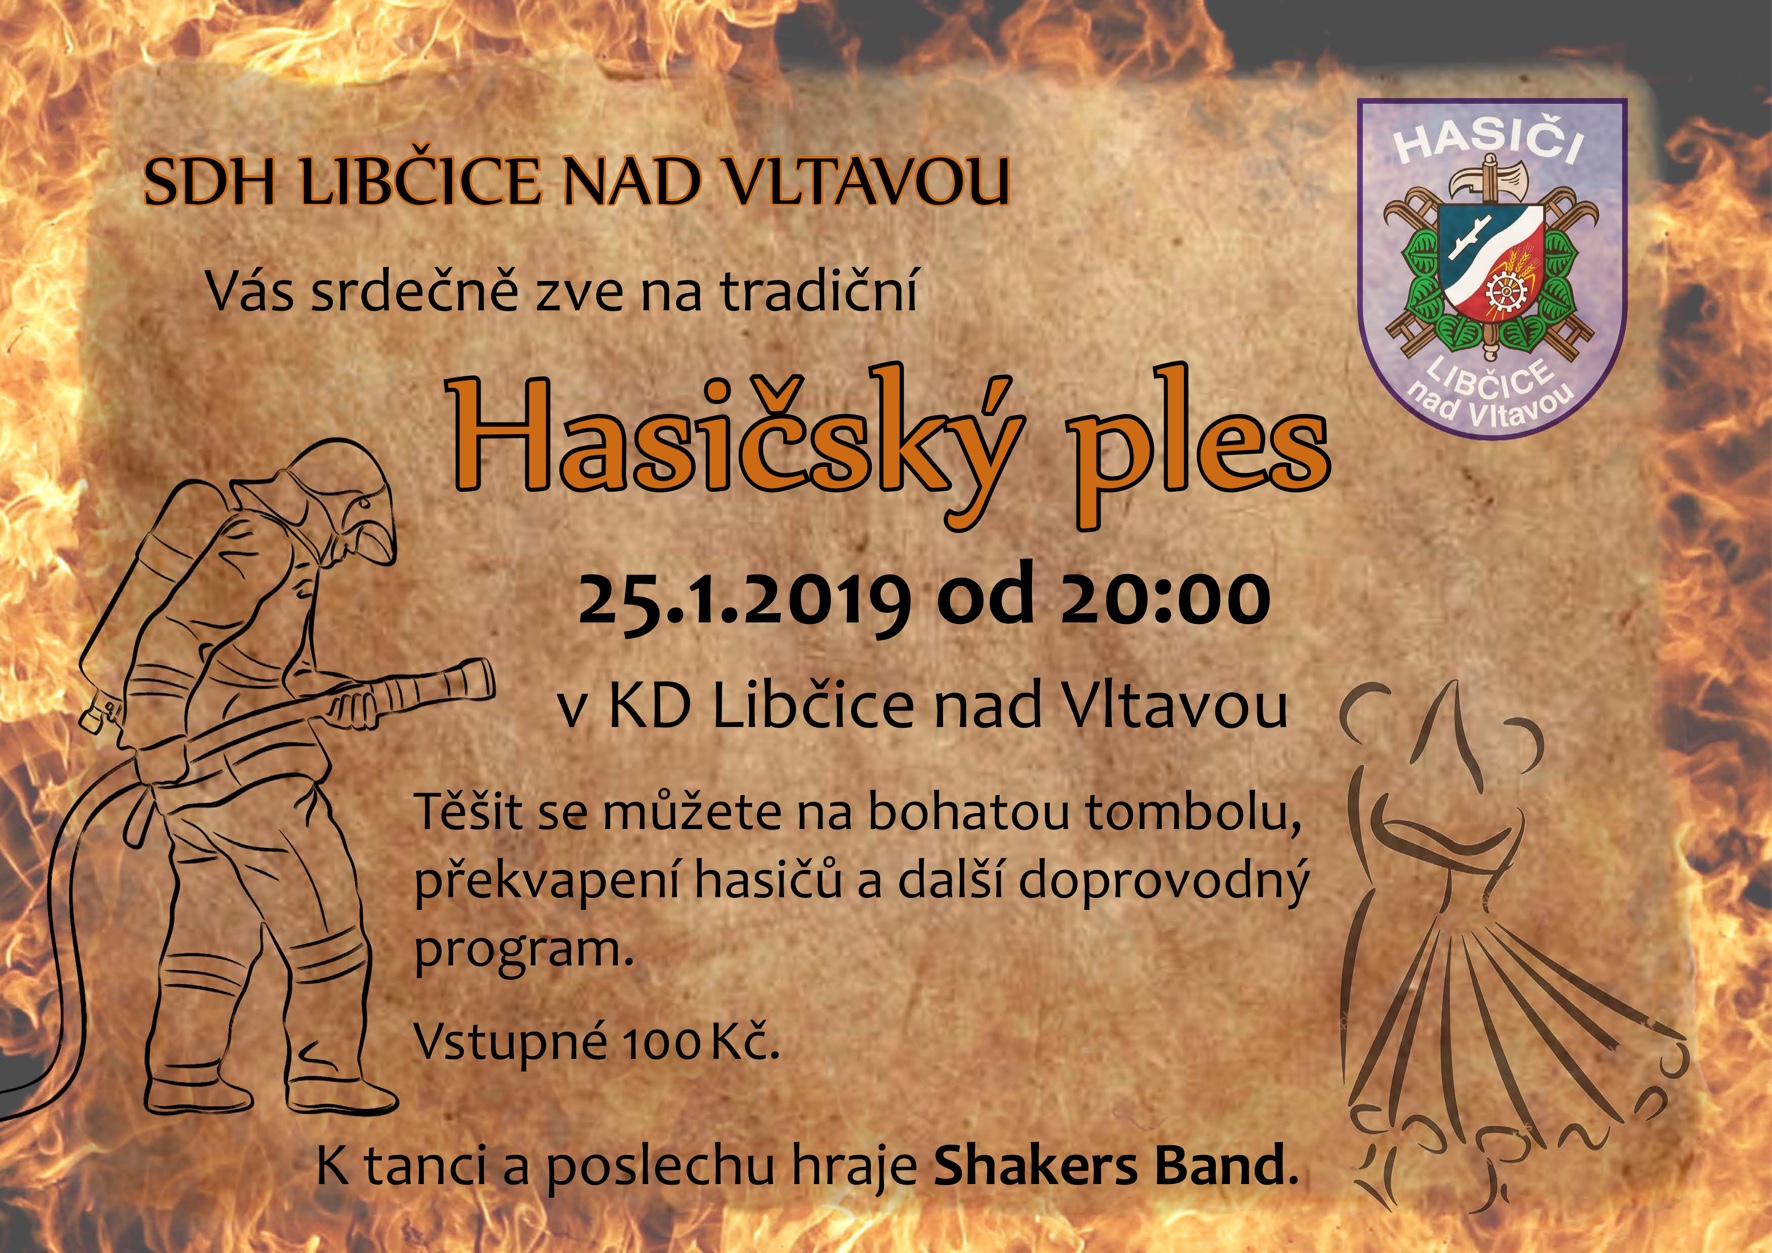 Hasičský ples SDH Libčice @ KD Libčice | Libčice nad Vltavou | Středočeský kraj | Česká republika